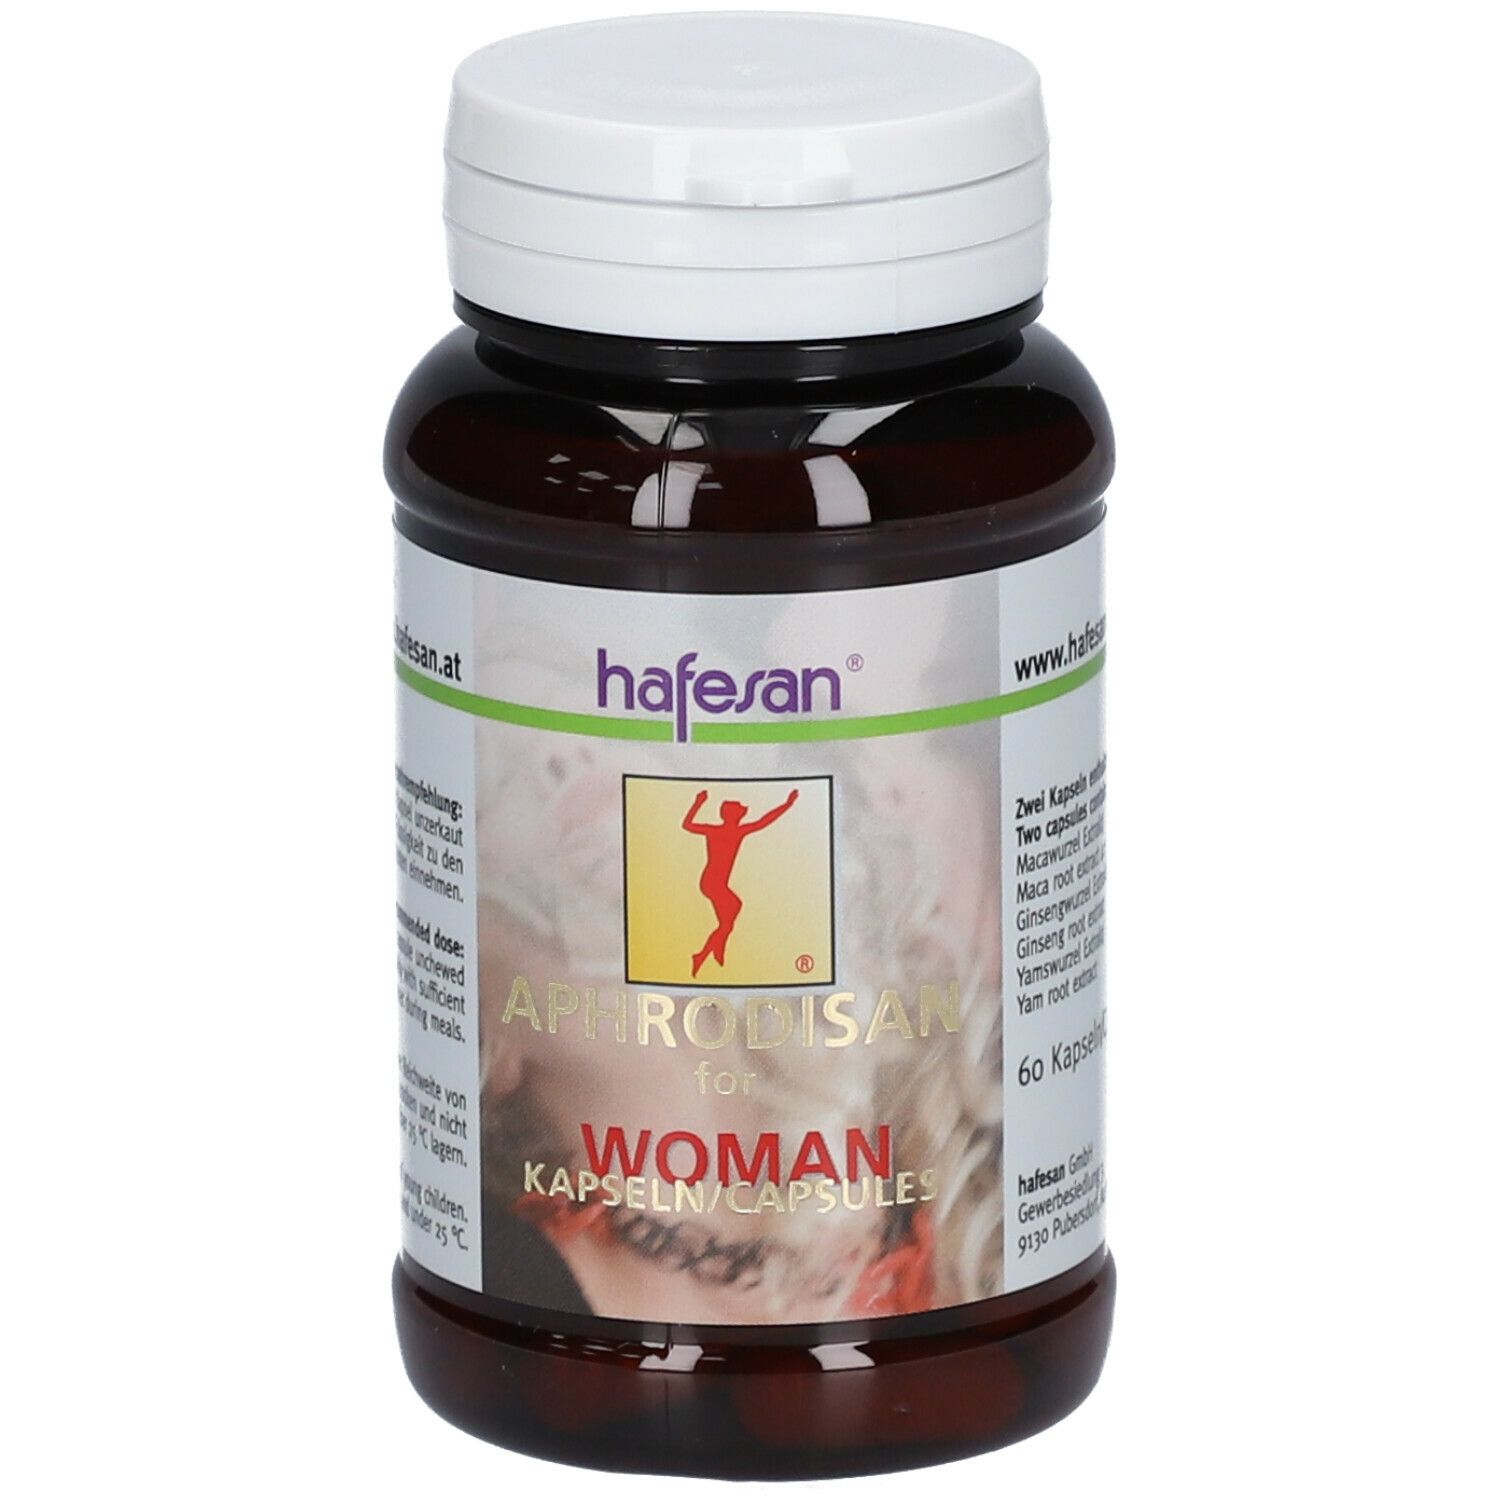 hafesan® Aphrodisan for Woman